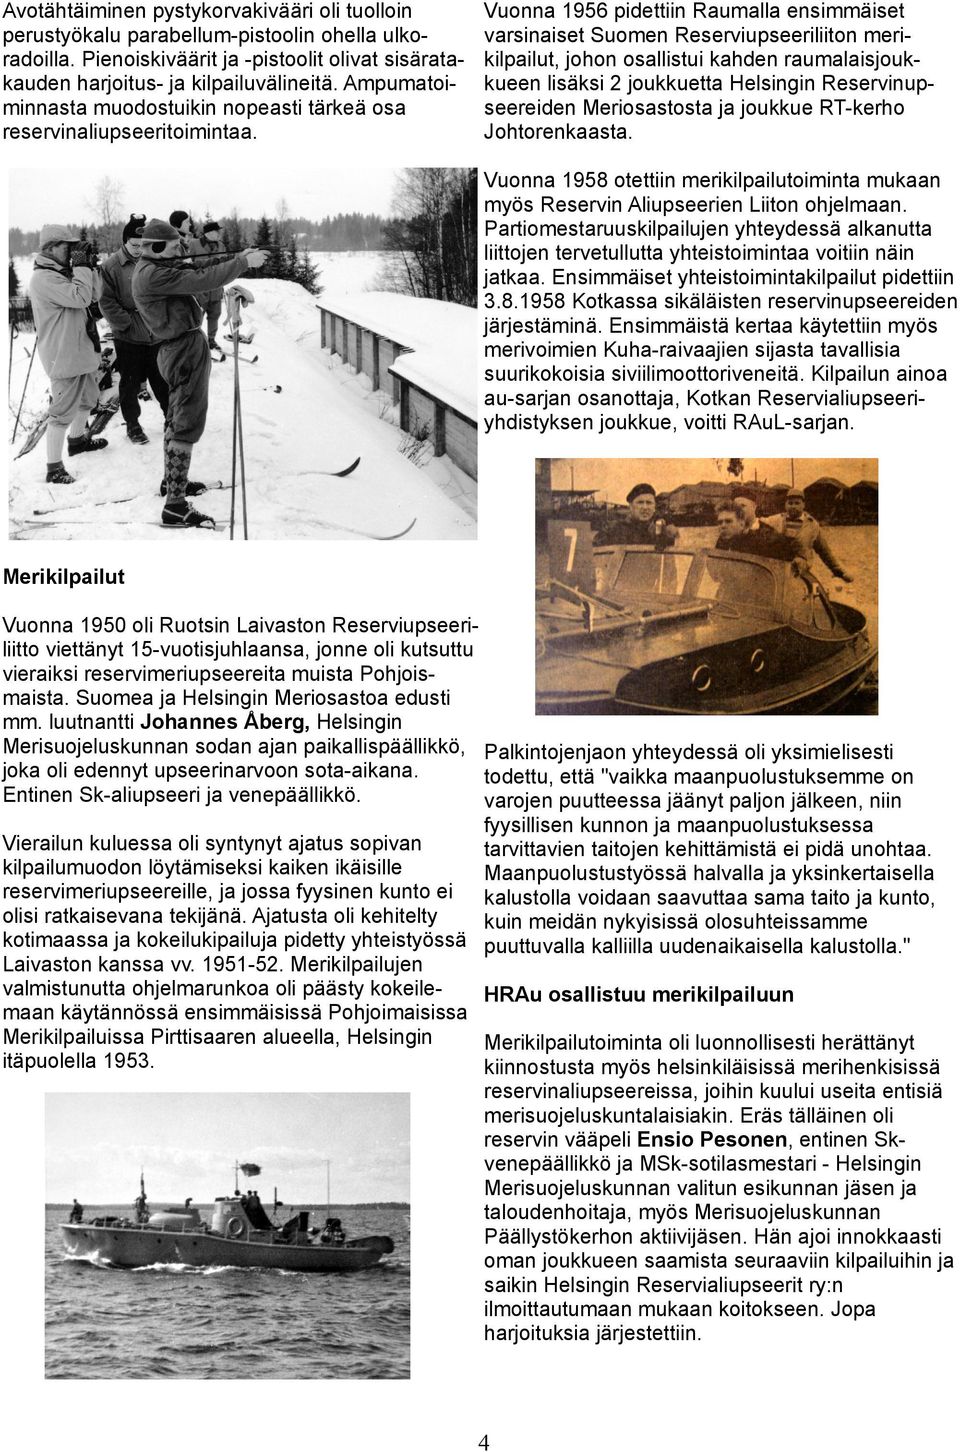 Vuonna 1956 pidettiin Raumalla ensimmäiset varsinaiset Suomen Reserviupseeriliiton merikilpailut, johon osallistui kahden raumalaisjoukkueen lisäksi 2 joukkuetta Helsingin Reservinupseereiden